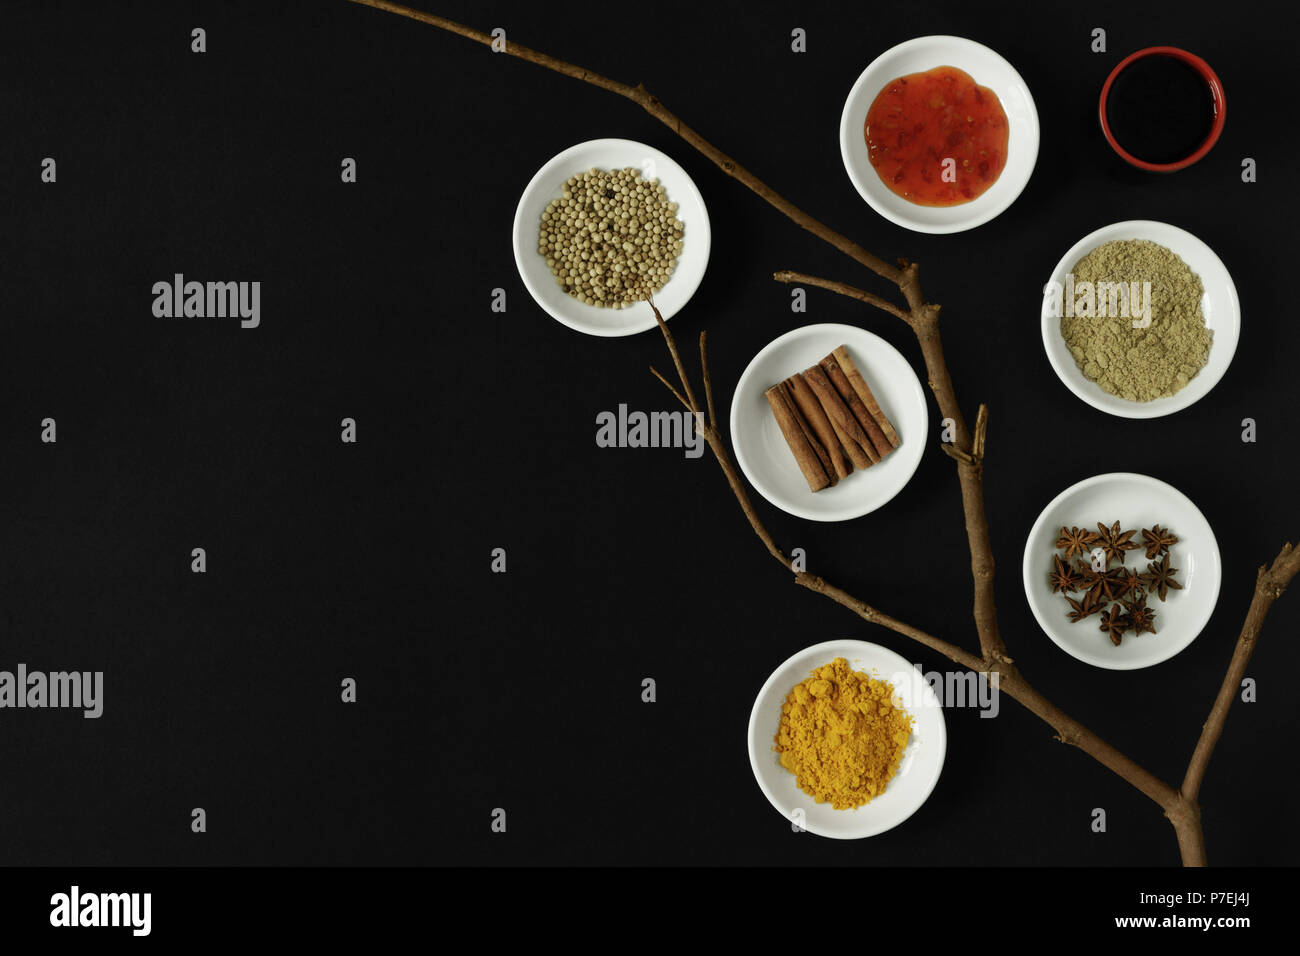 Asiatische Gewürze, Kräuter und Zutaten zum Kochen auf schwarzem Hintergrund. Stockfoto